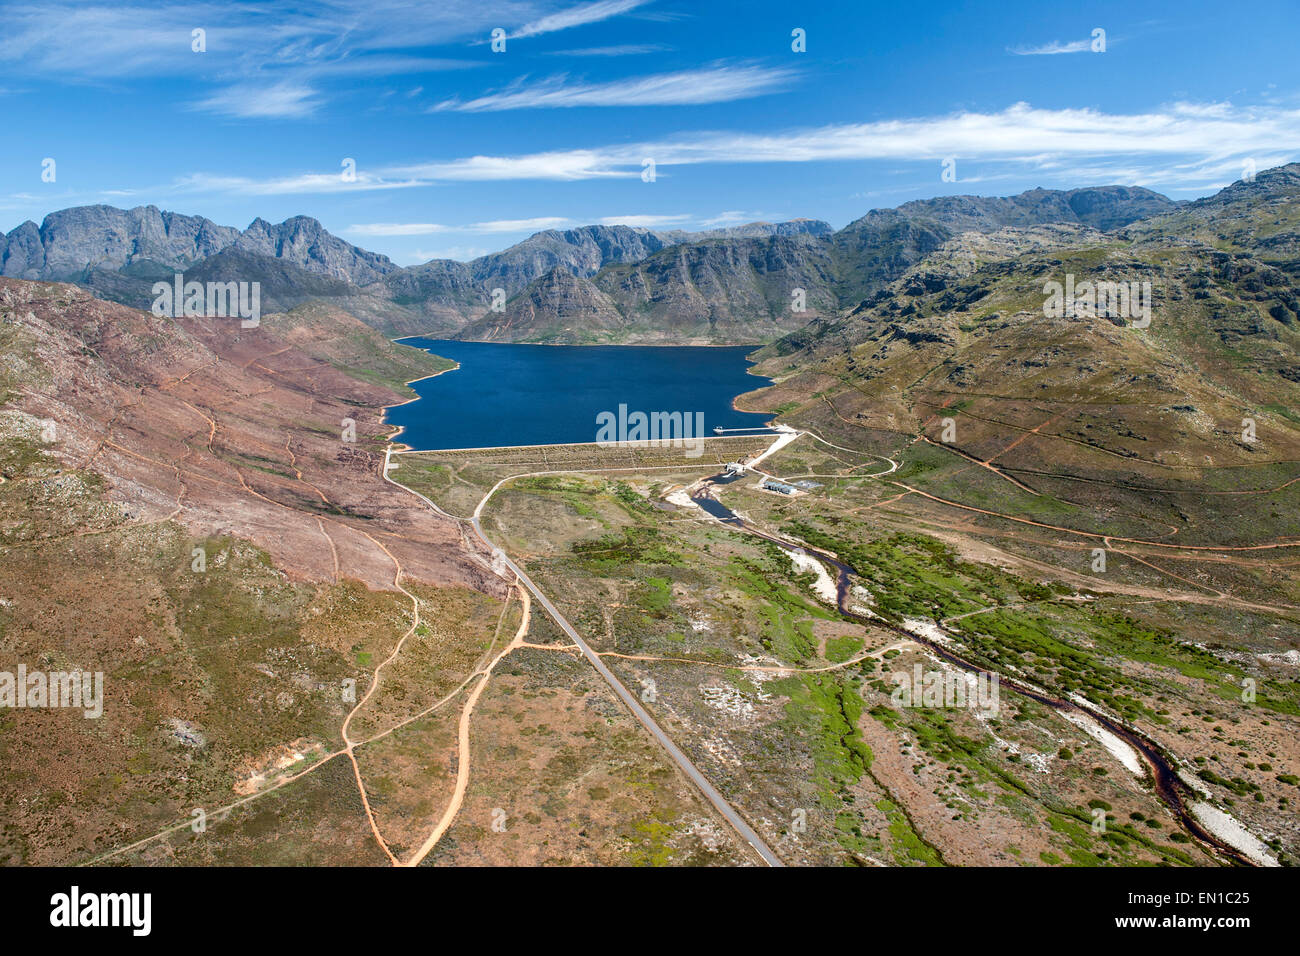 Barrage de la rivière Berg et les montagnes Hottentots Holland près de Franschhoek dans la région de Western Cape, Afrique du Sud. Banque D'Images